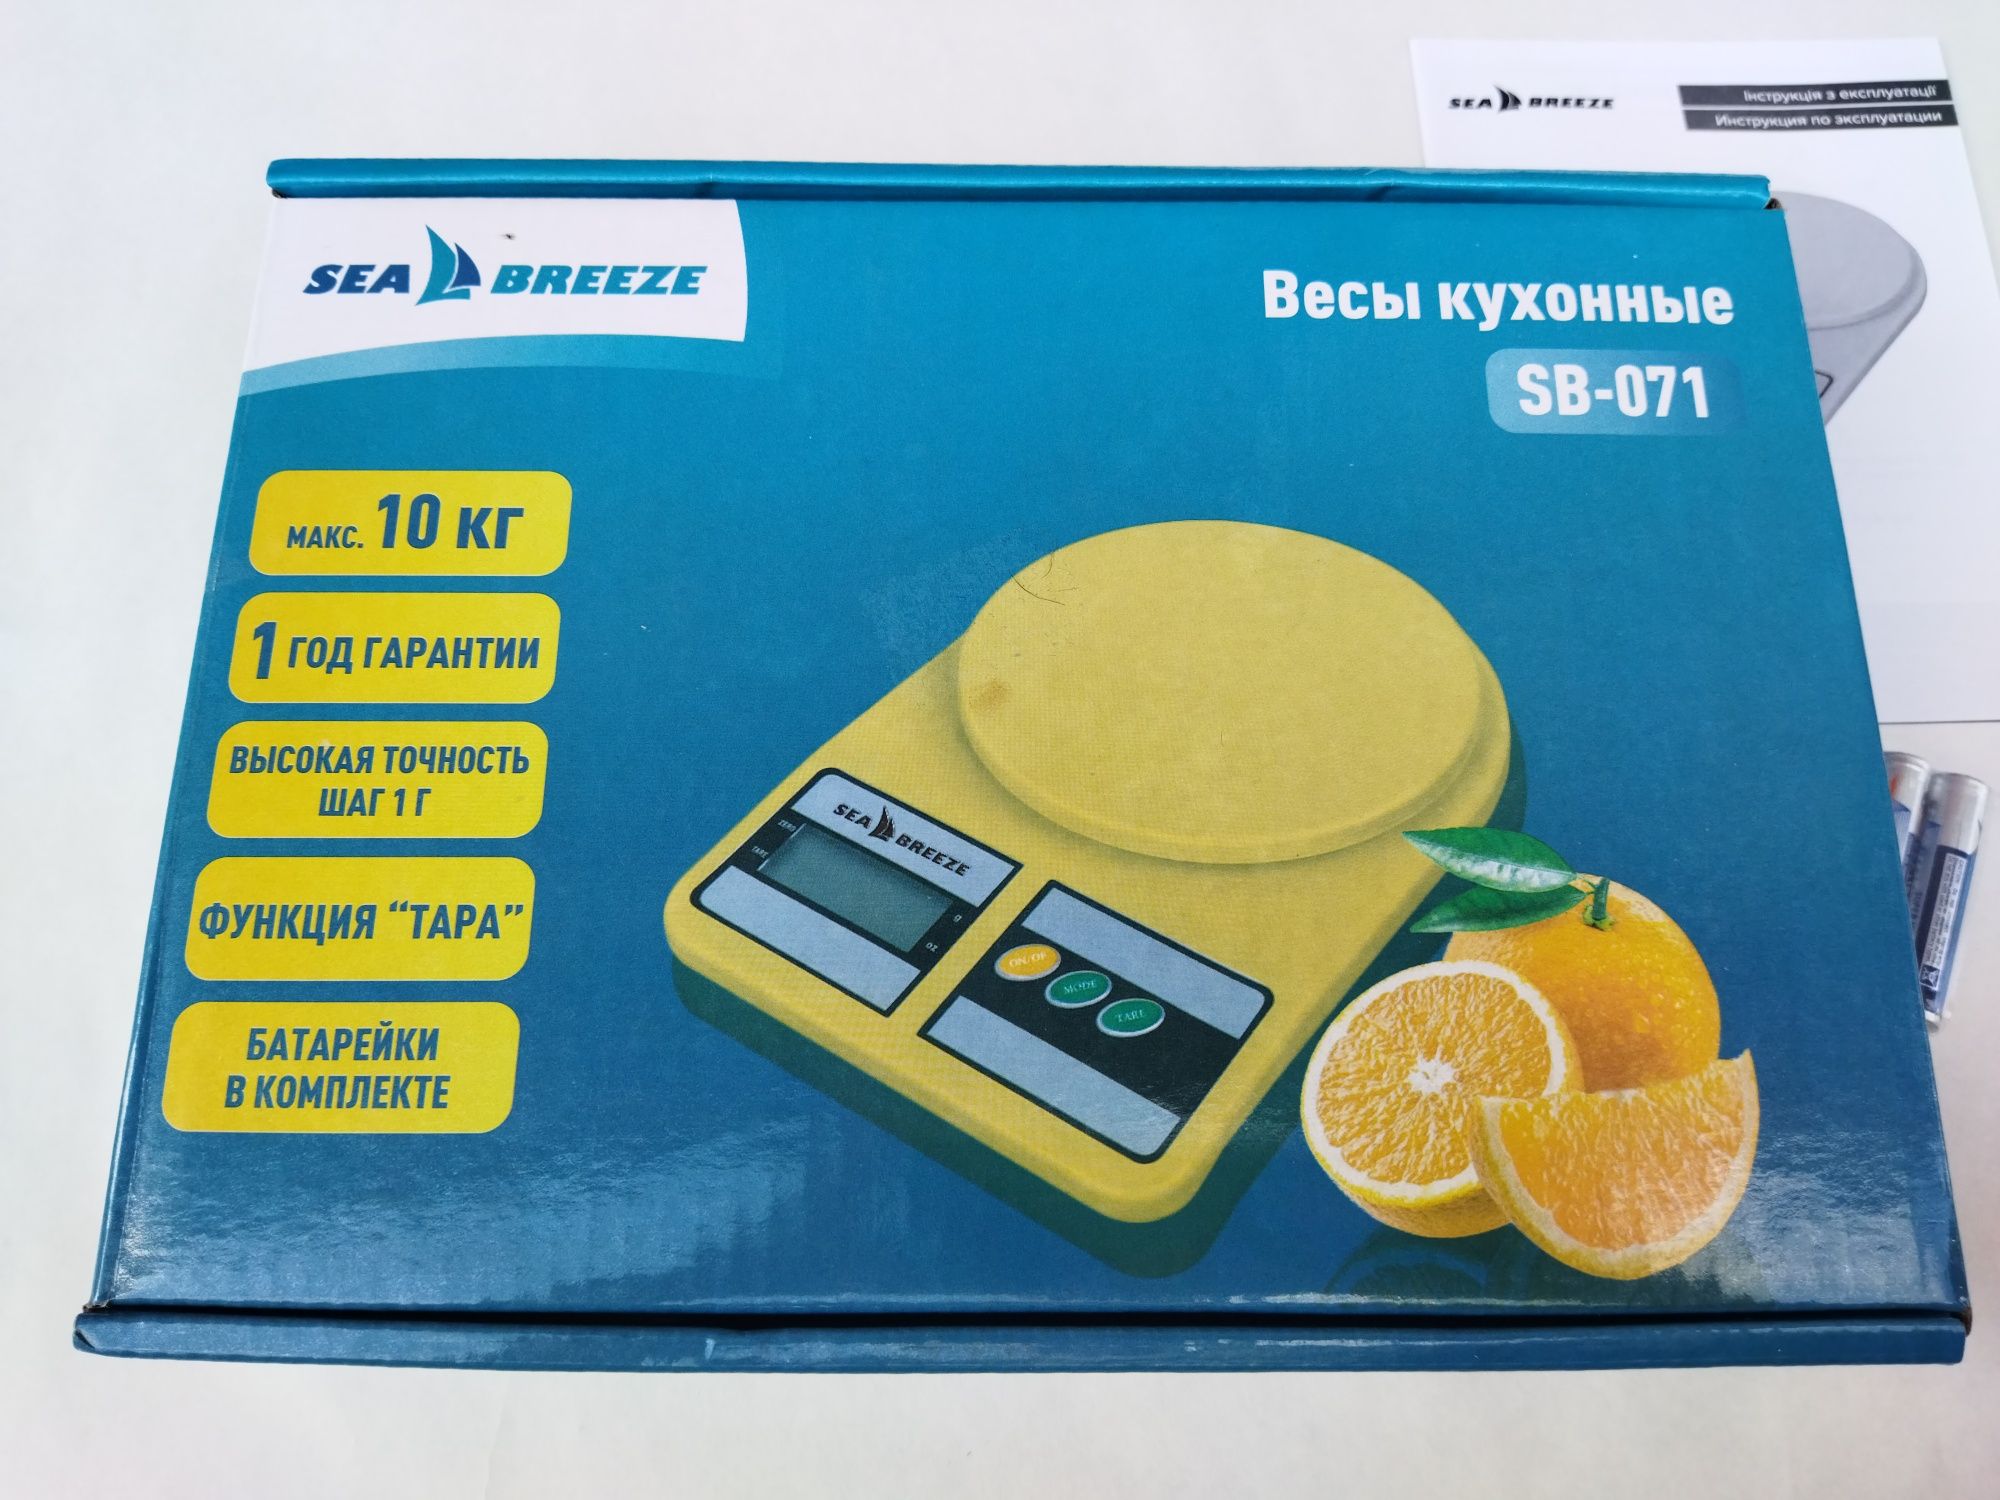 Ваги кухонні Sea Breeze SB-071, жовті до 10 кг